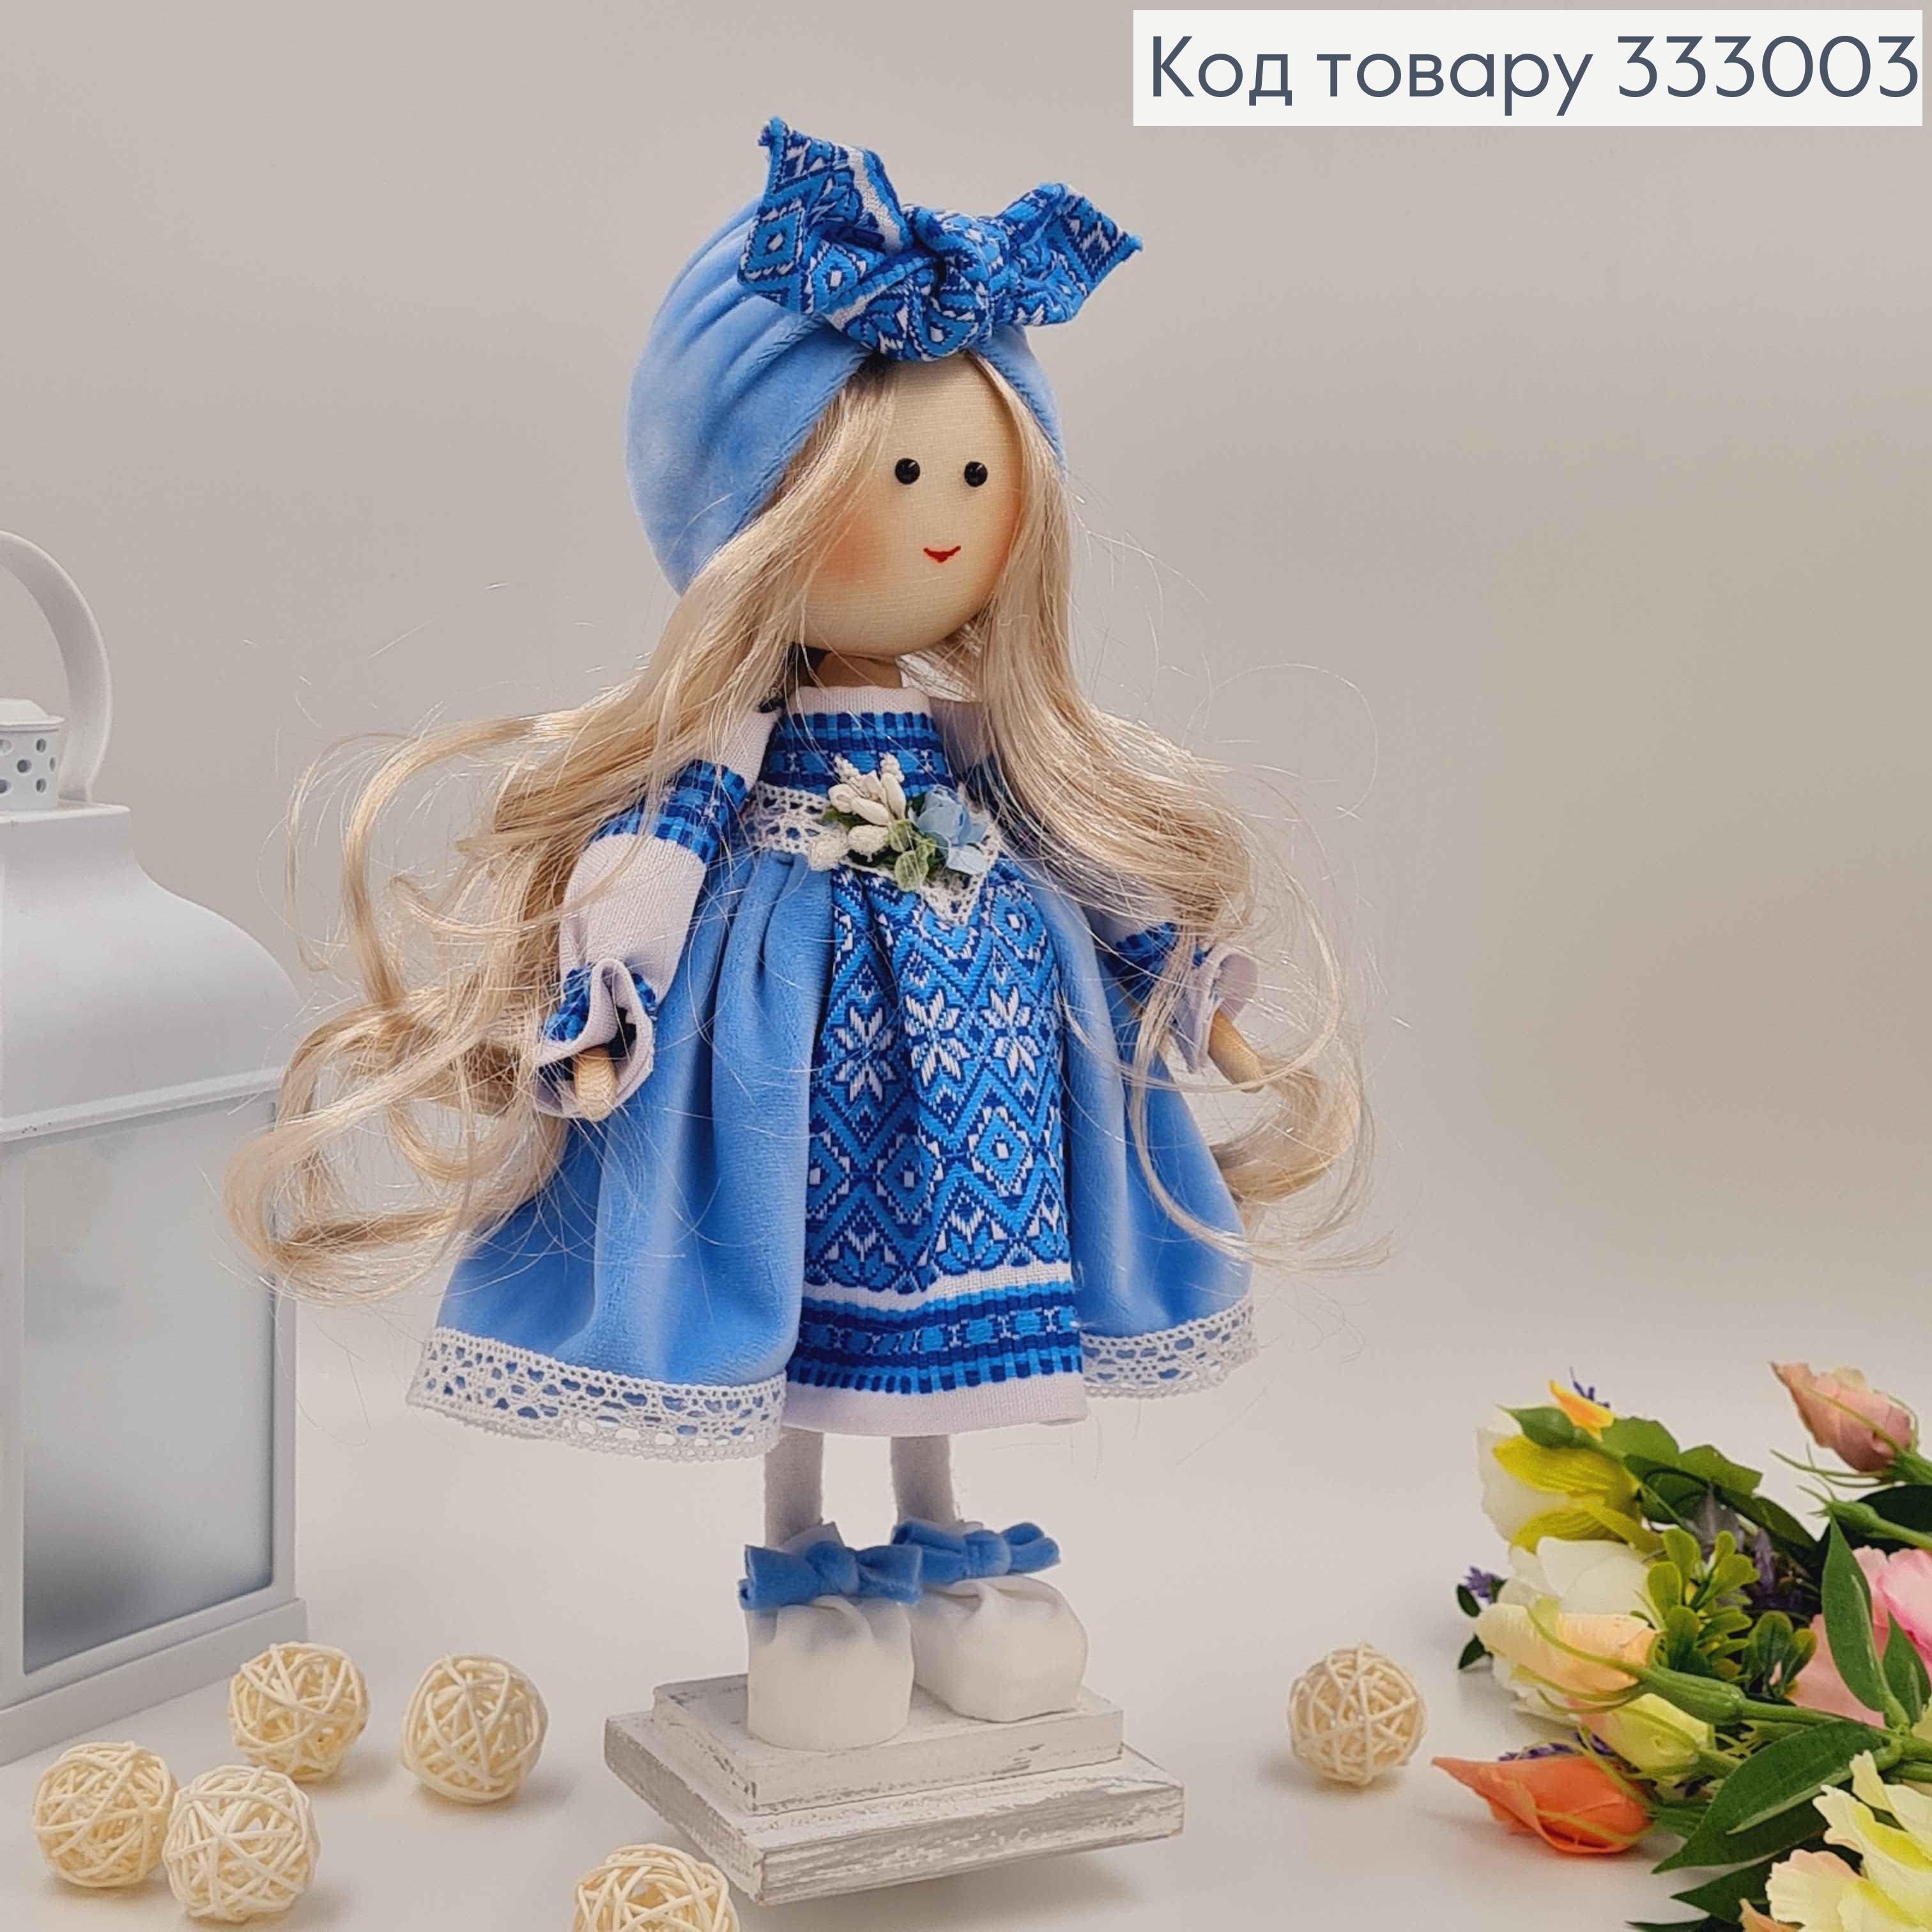 Лялька ДІВЧИНКА,"Солоха білявка" в блакитній сукні, висота 32см, ручна робота, Україна 333003 фото 2